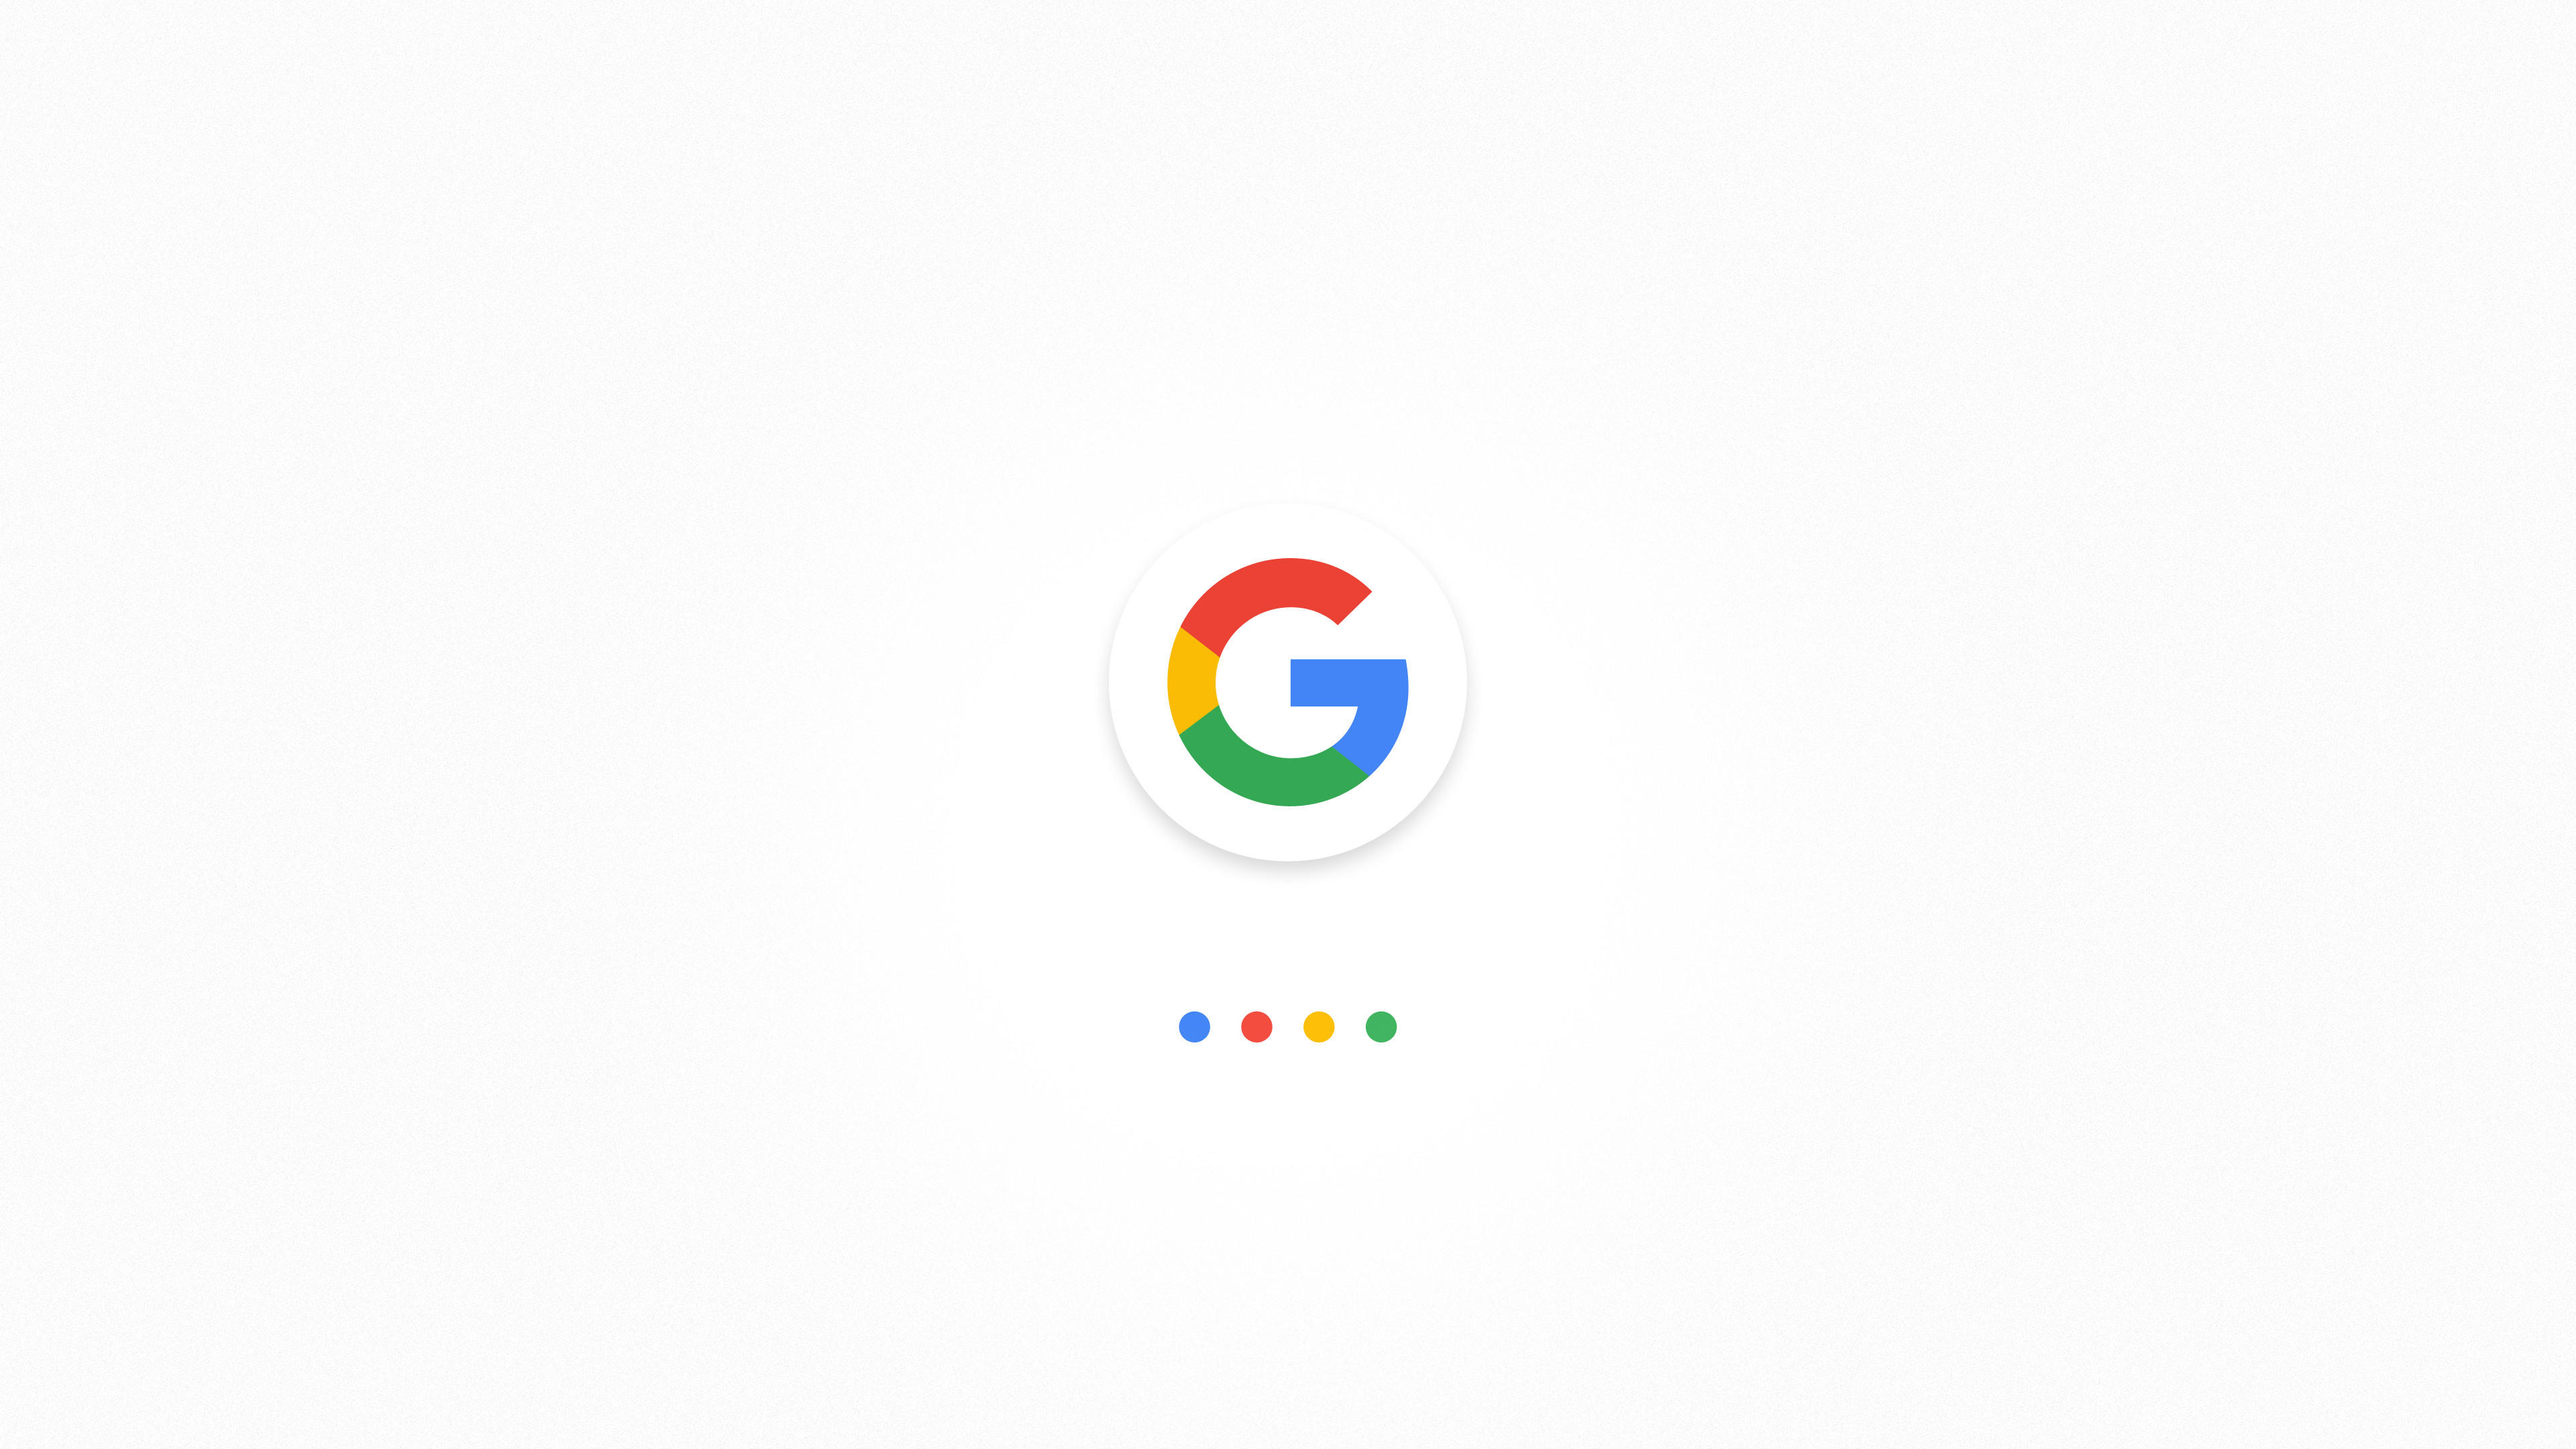 3840x2160 Google Wallpaper Widescreen